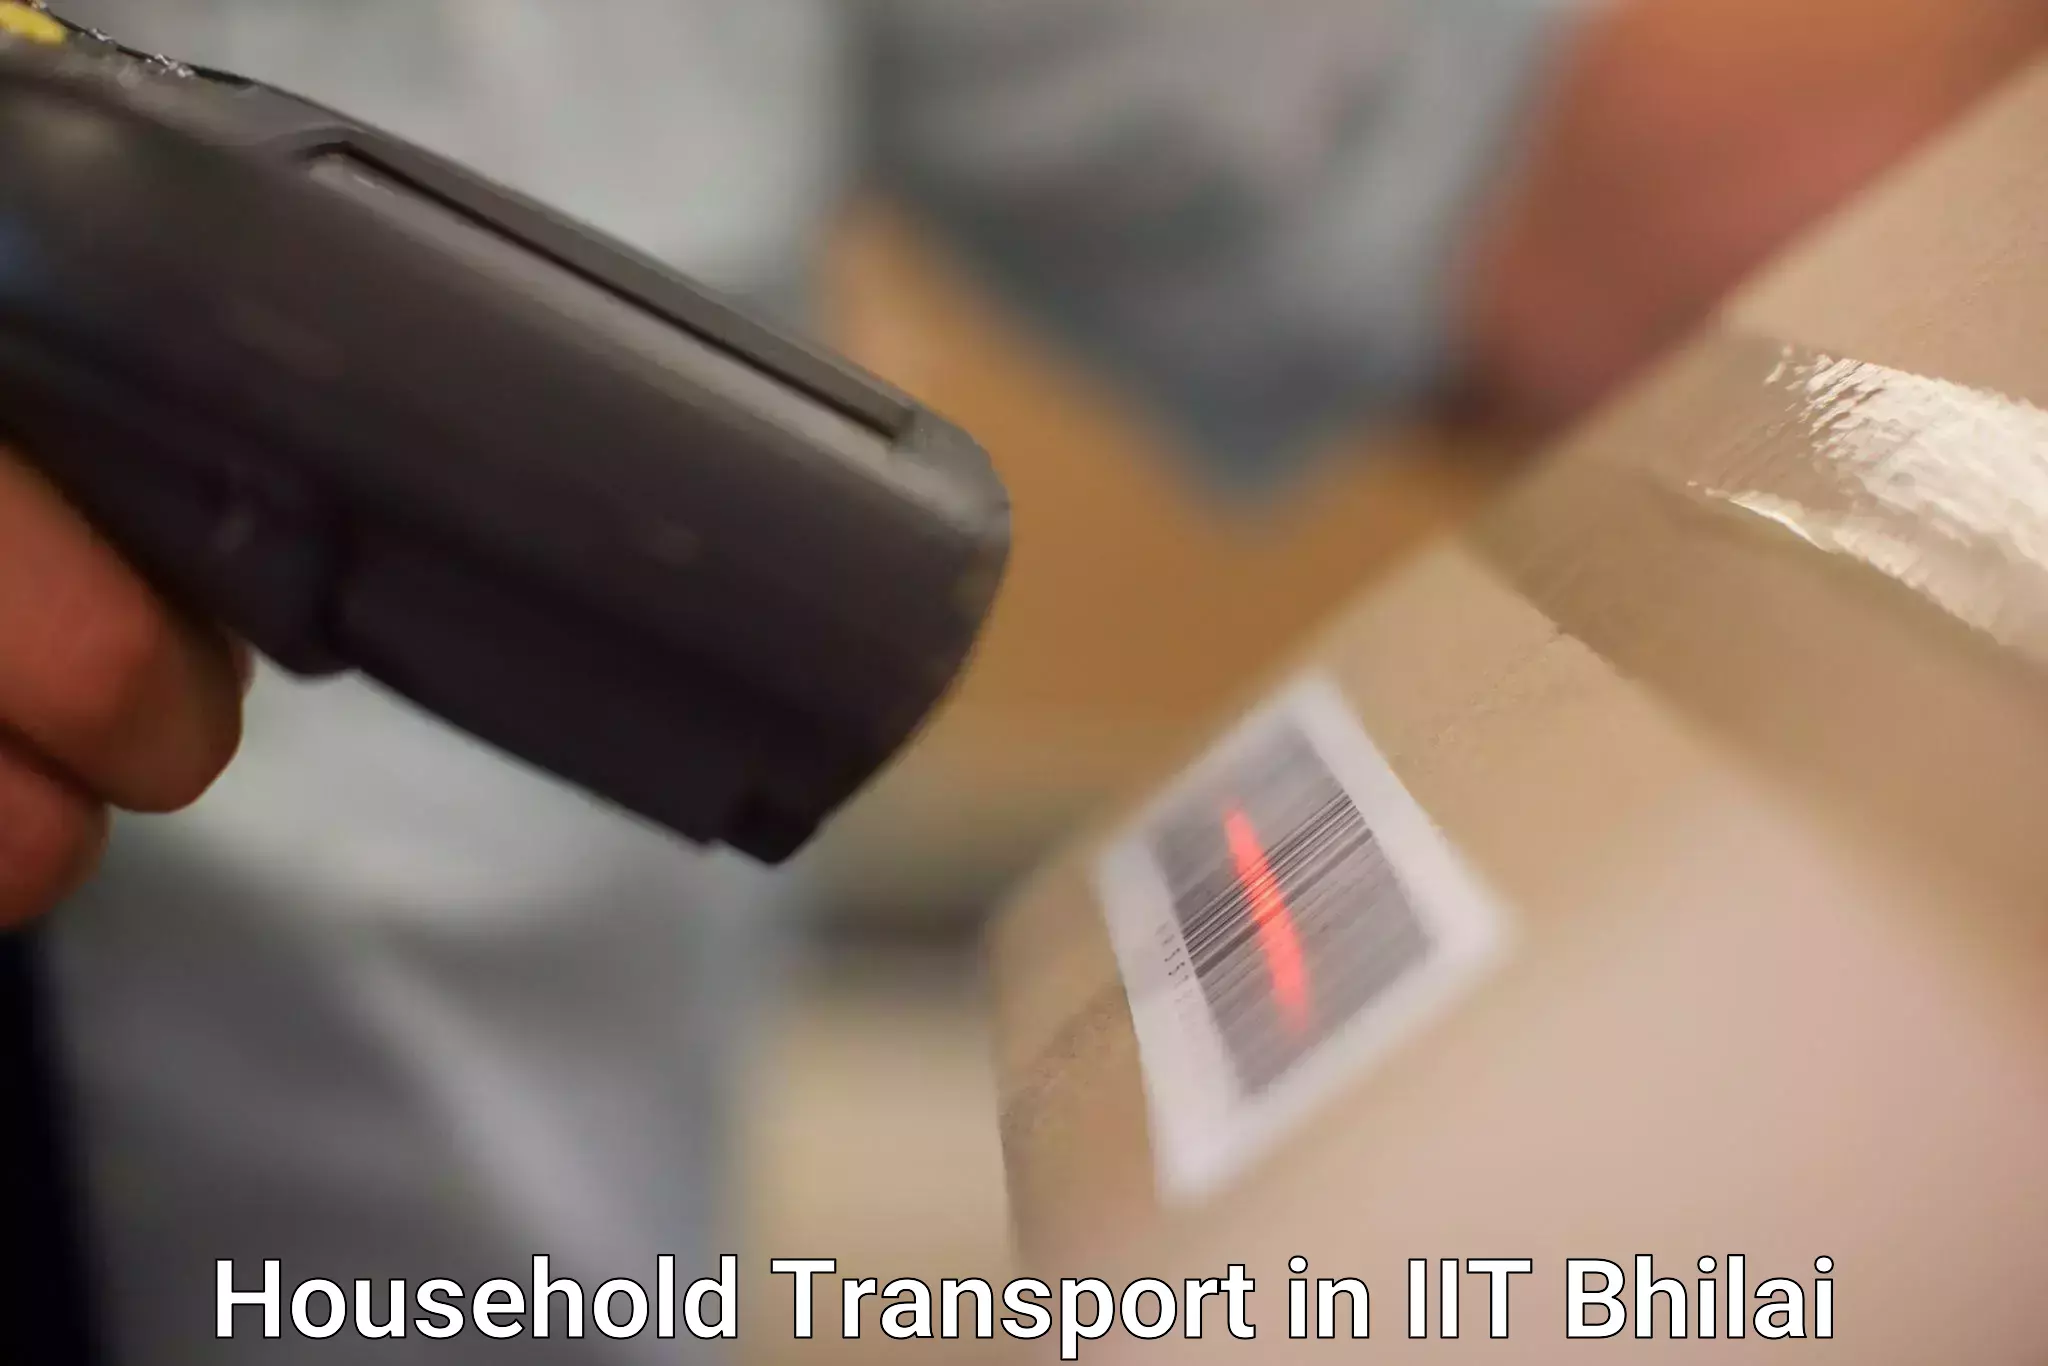 Furniture transport professionals in IIT Bhilai